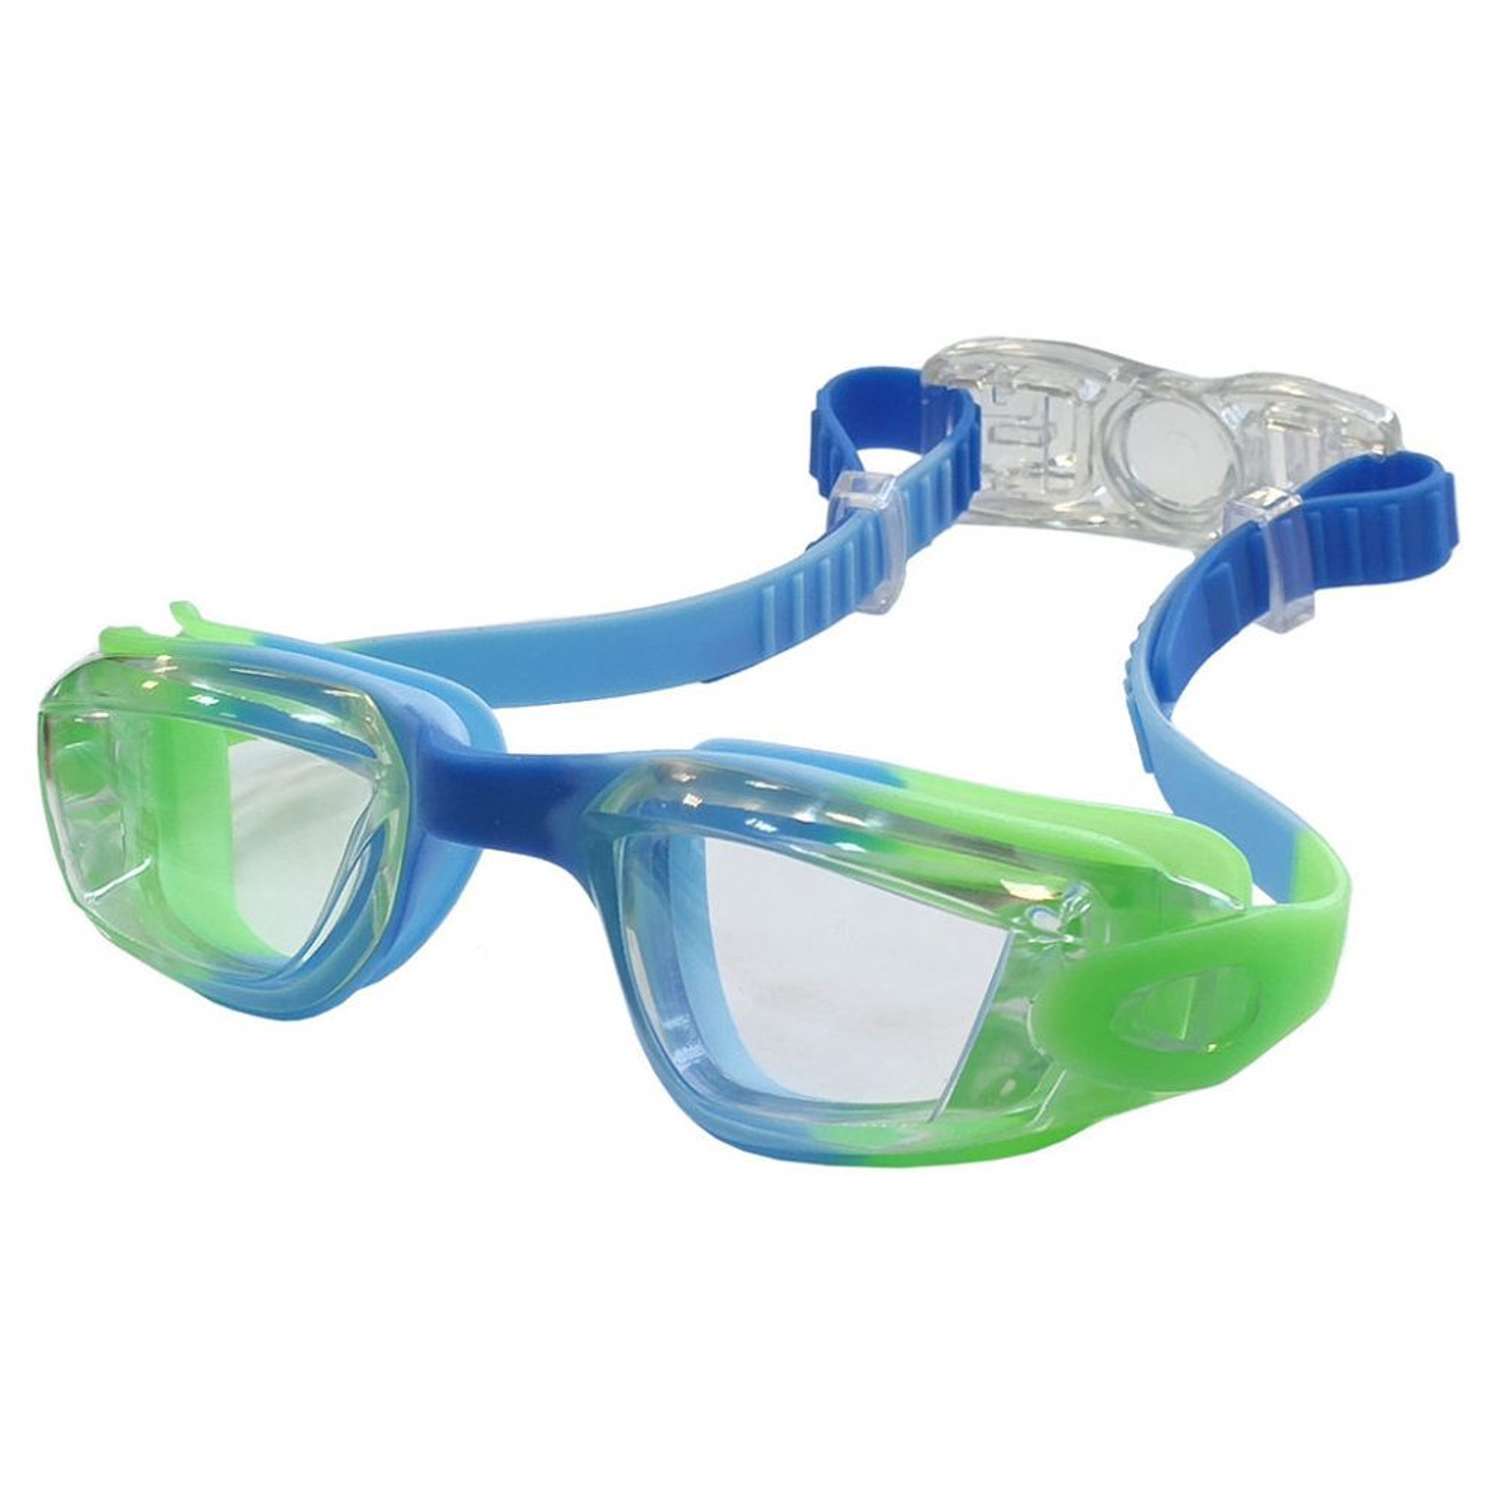 Очки для плавания Hawk E39680 детские сине-зеленые - фото 1